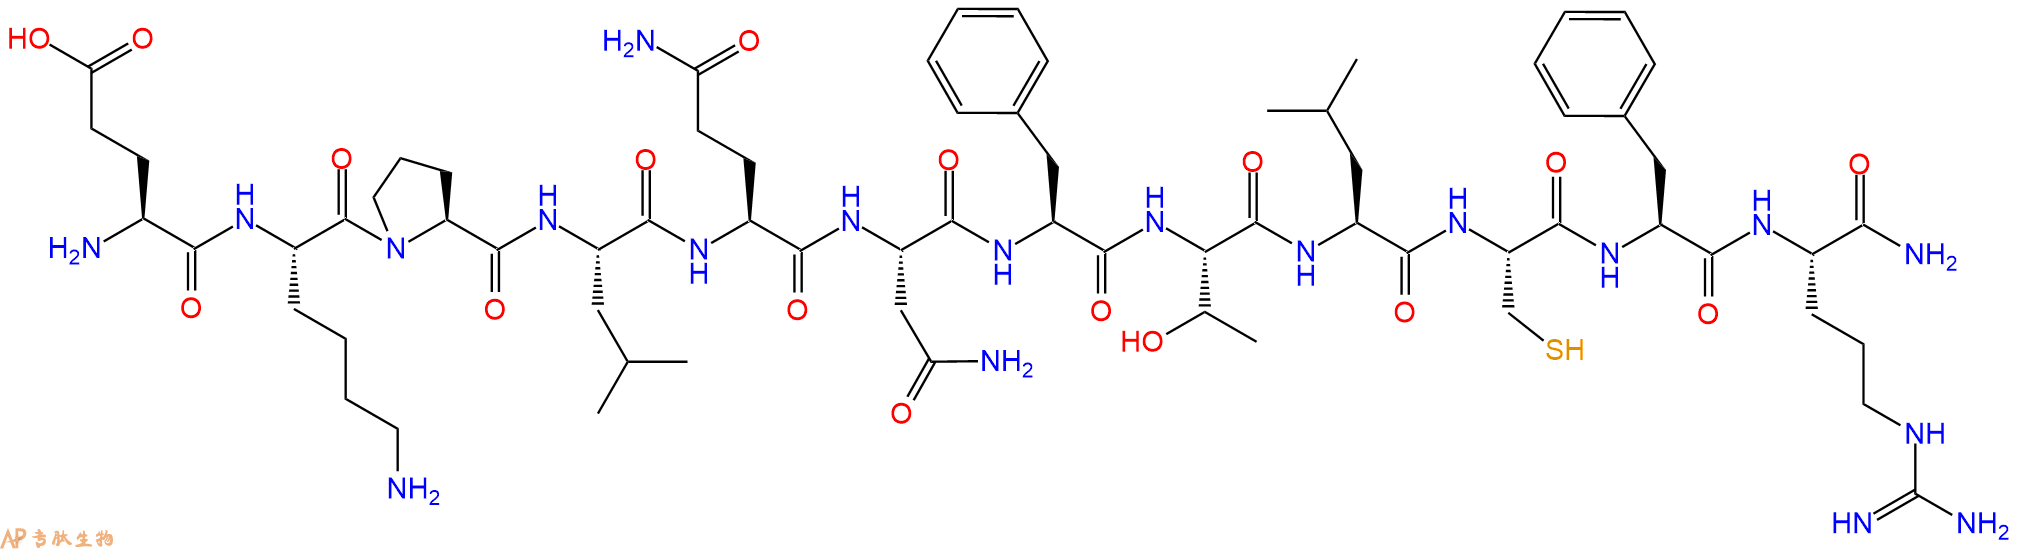 专肽生物产品淀粉肽Amyloid P Component (27-38) amide180387-75-1